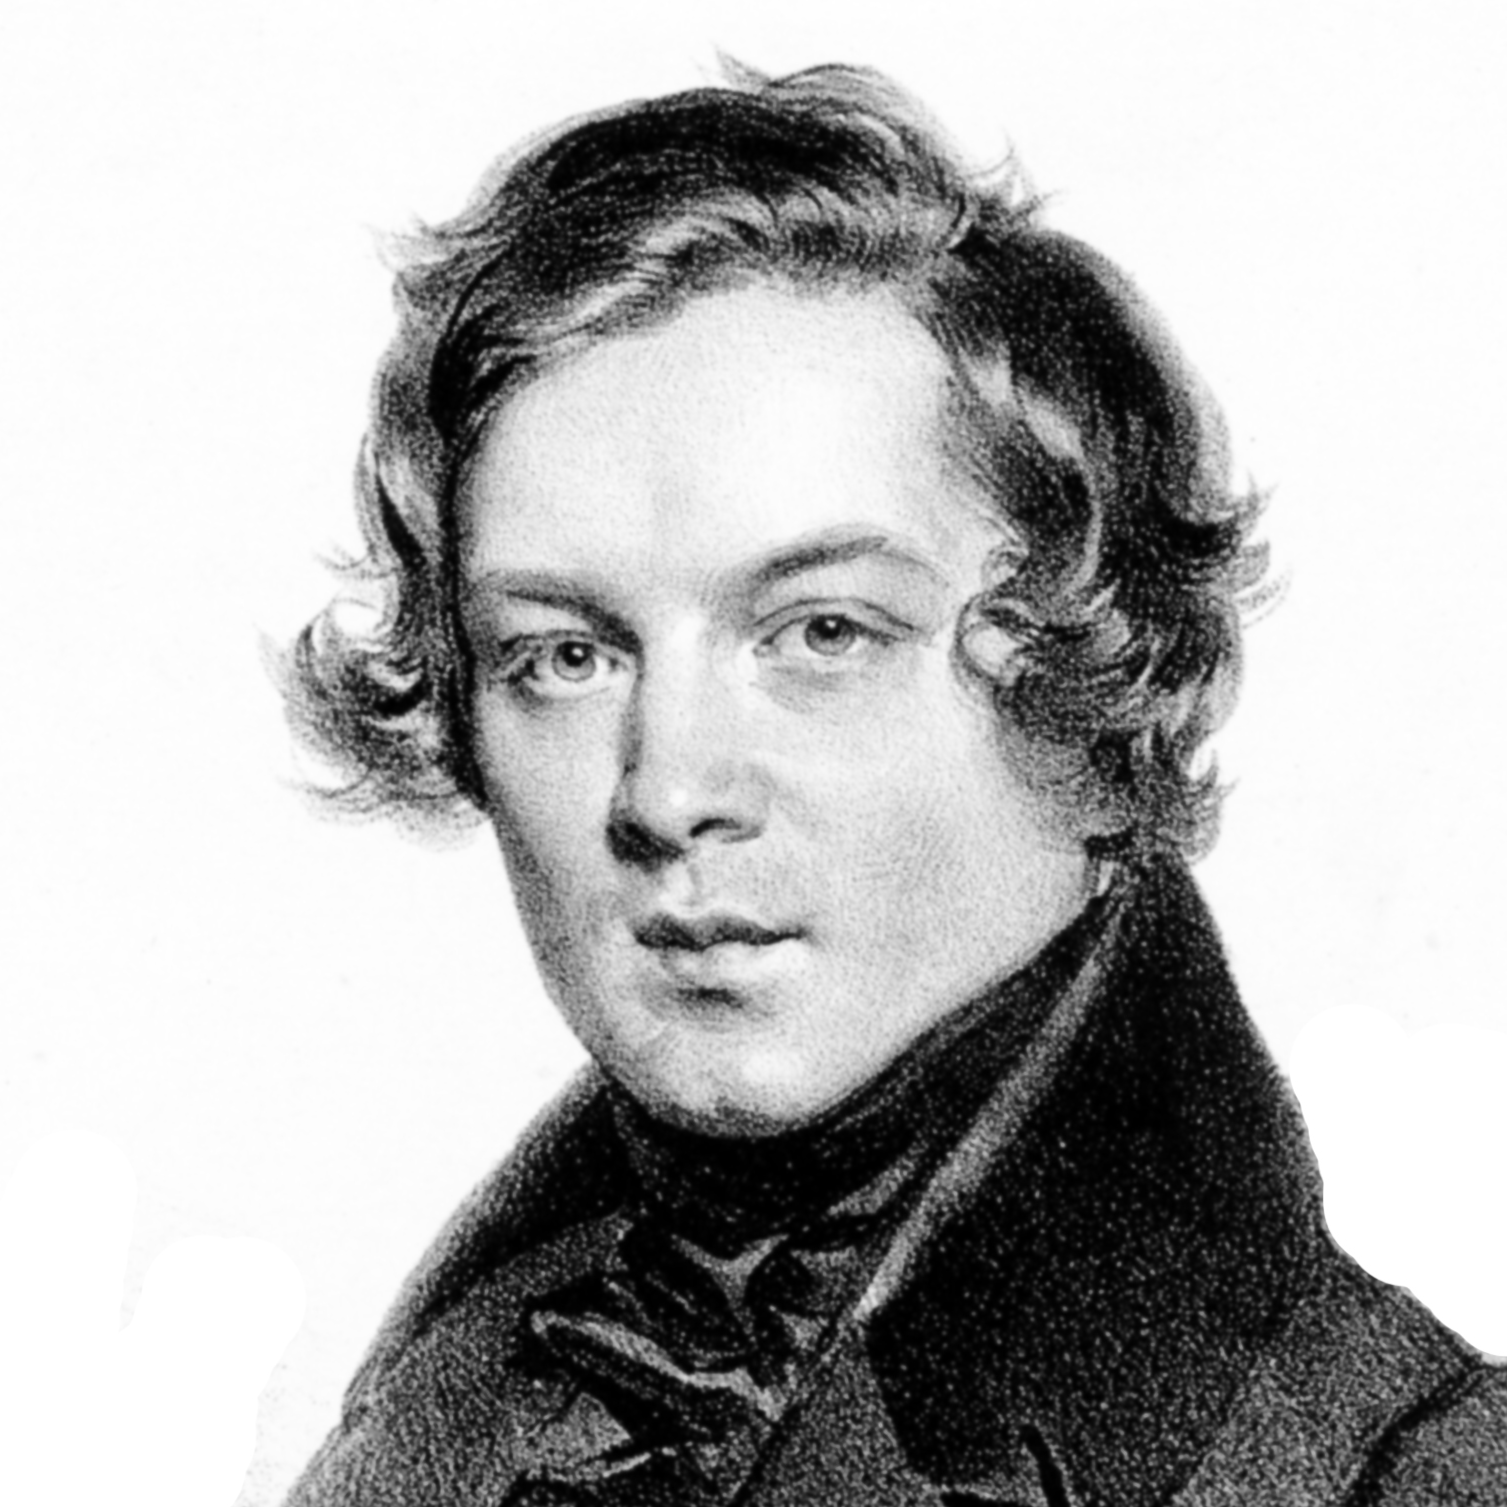 Robert Schumann - 歌手 - 网易云音乐